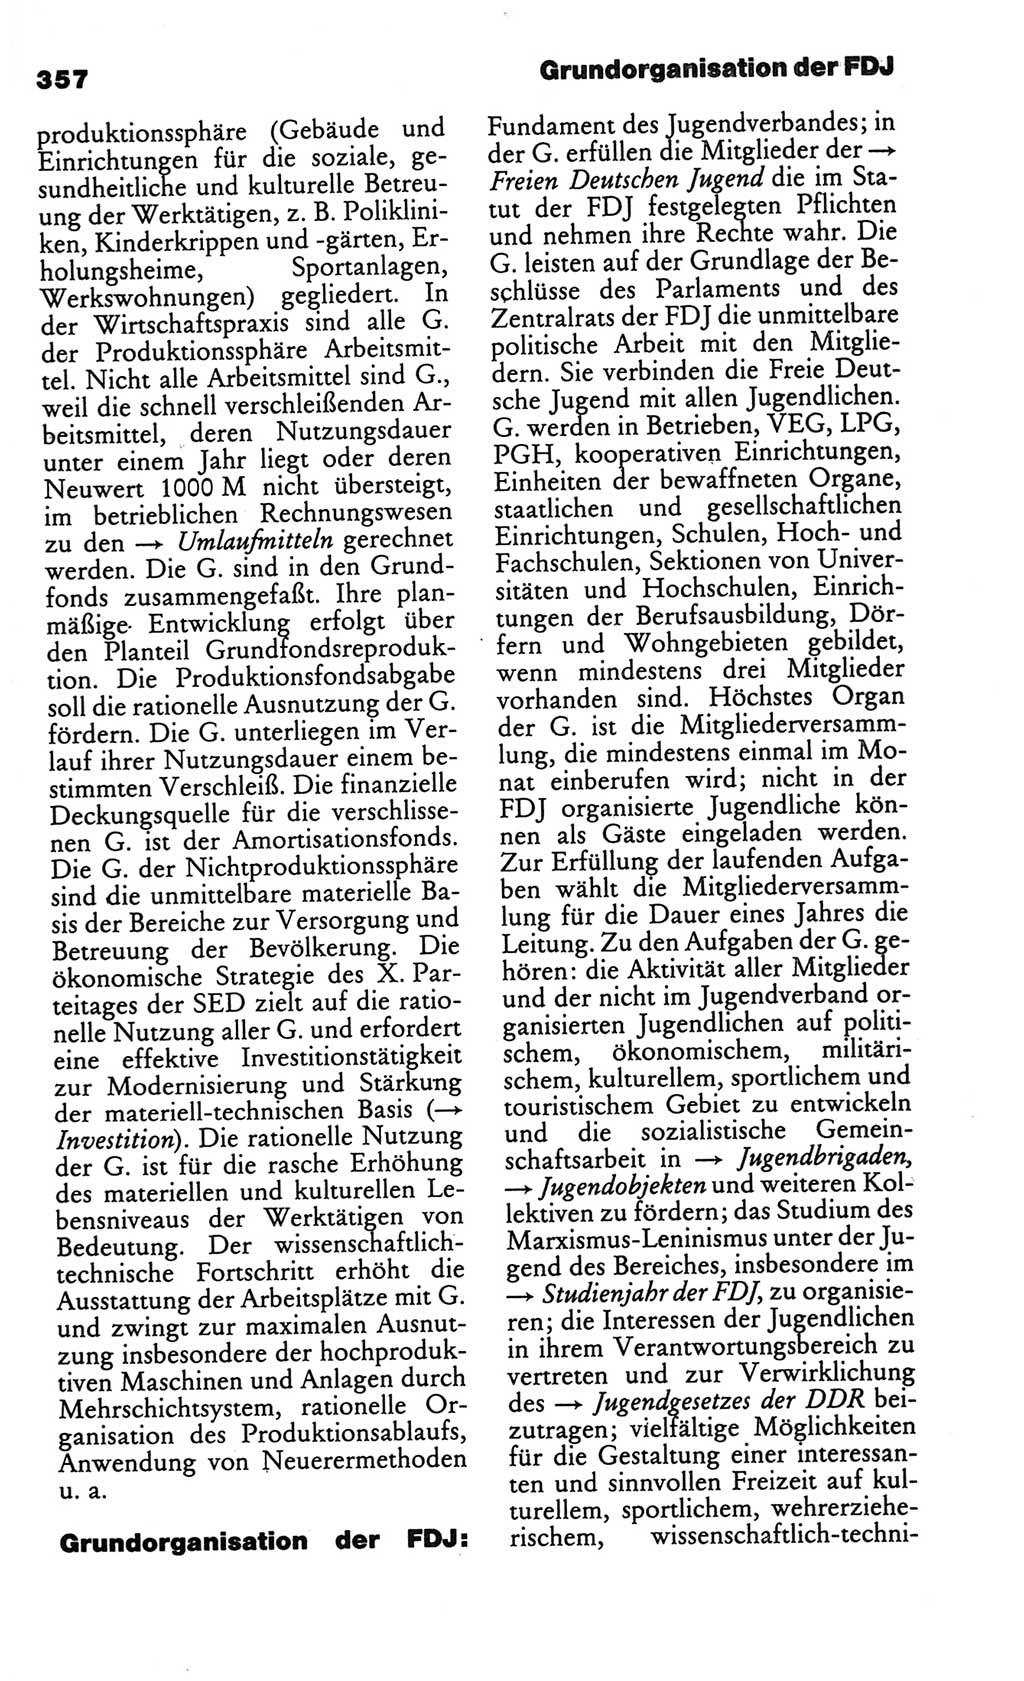 Kleines politisches Wörterbuch [Deutsche Demokratische Republik (DDR)] 1986, Seite 357 (Kl. pol. Wb. DDR 1986, S. 357)